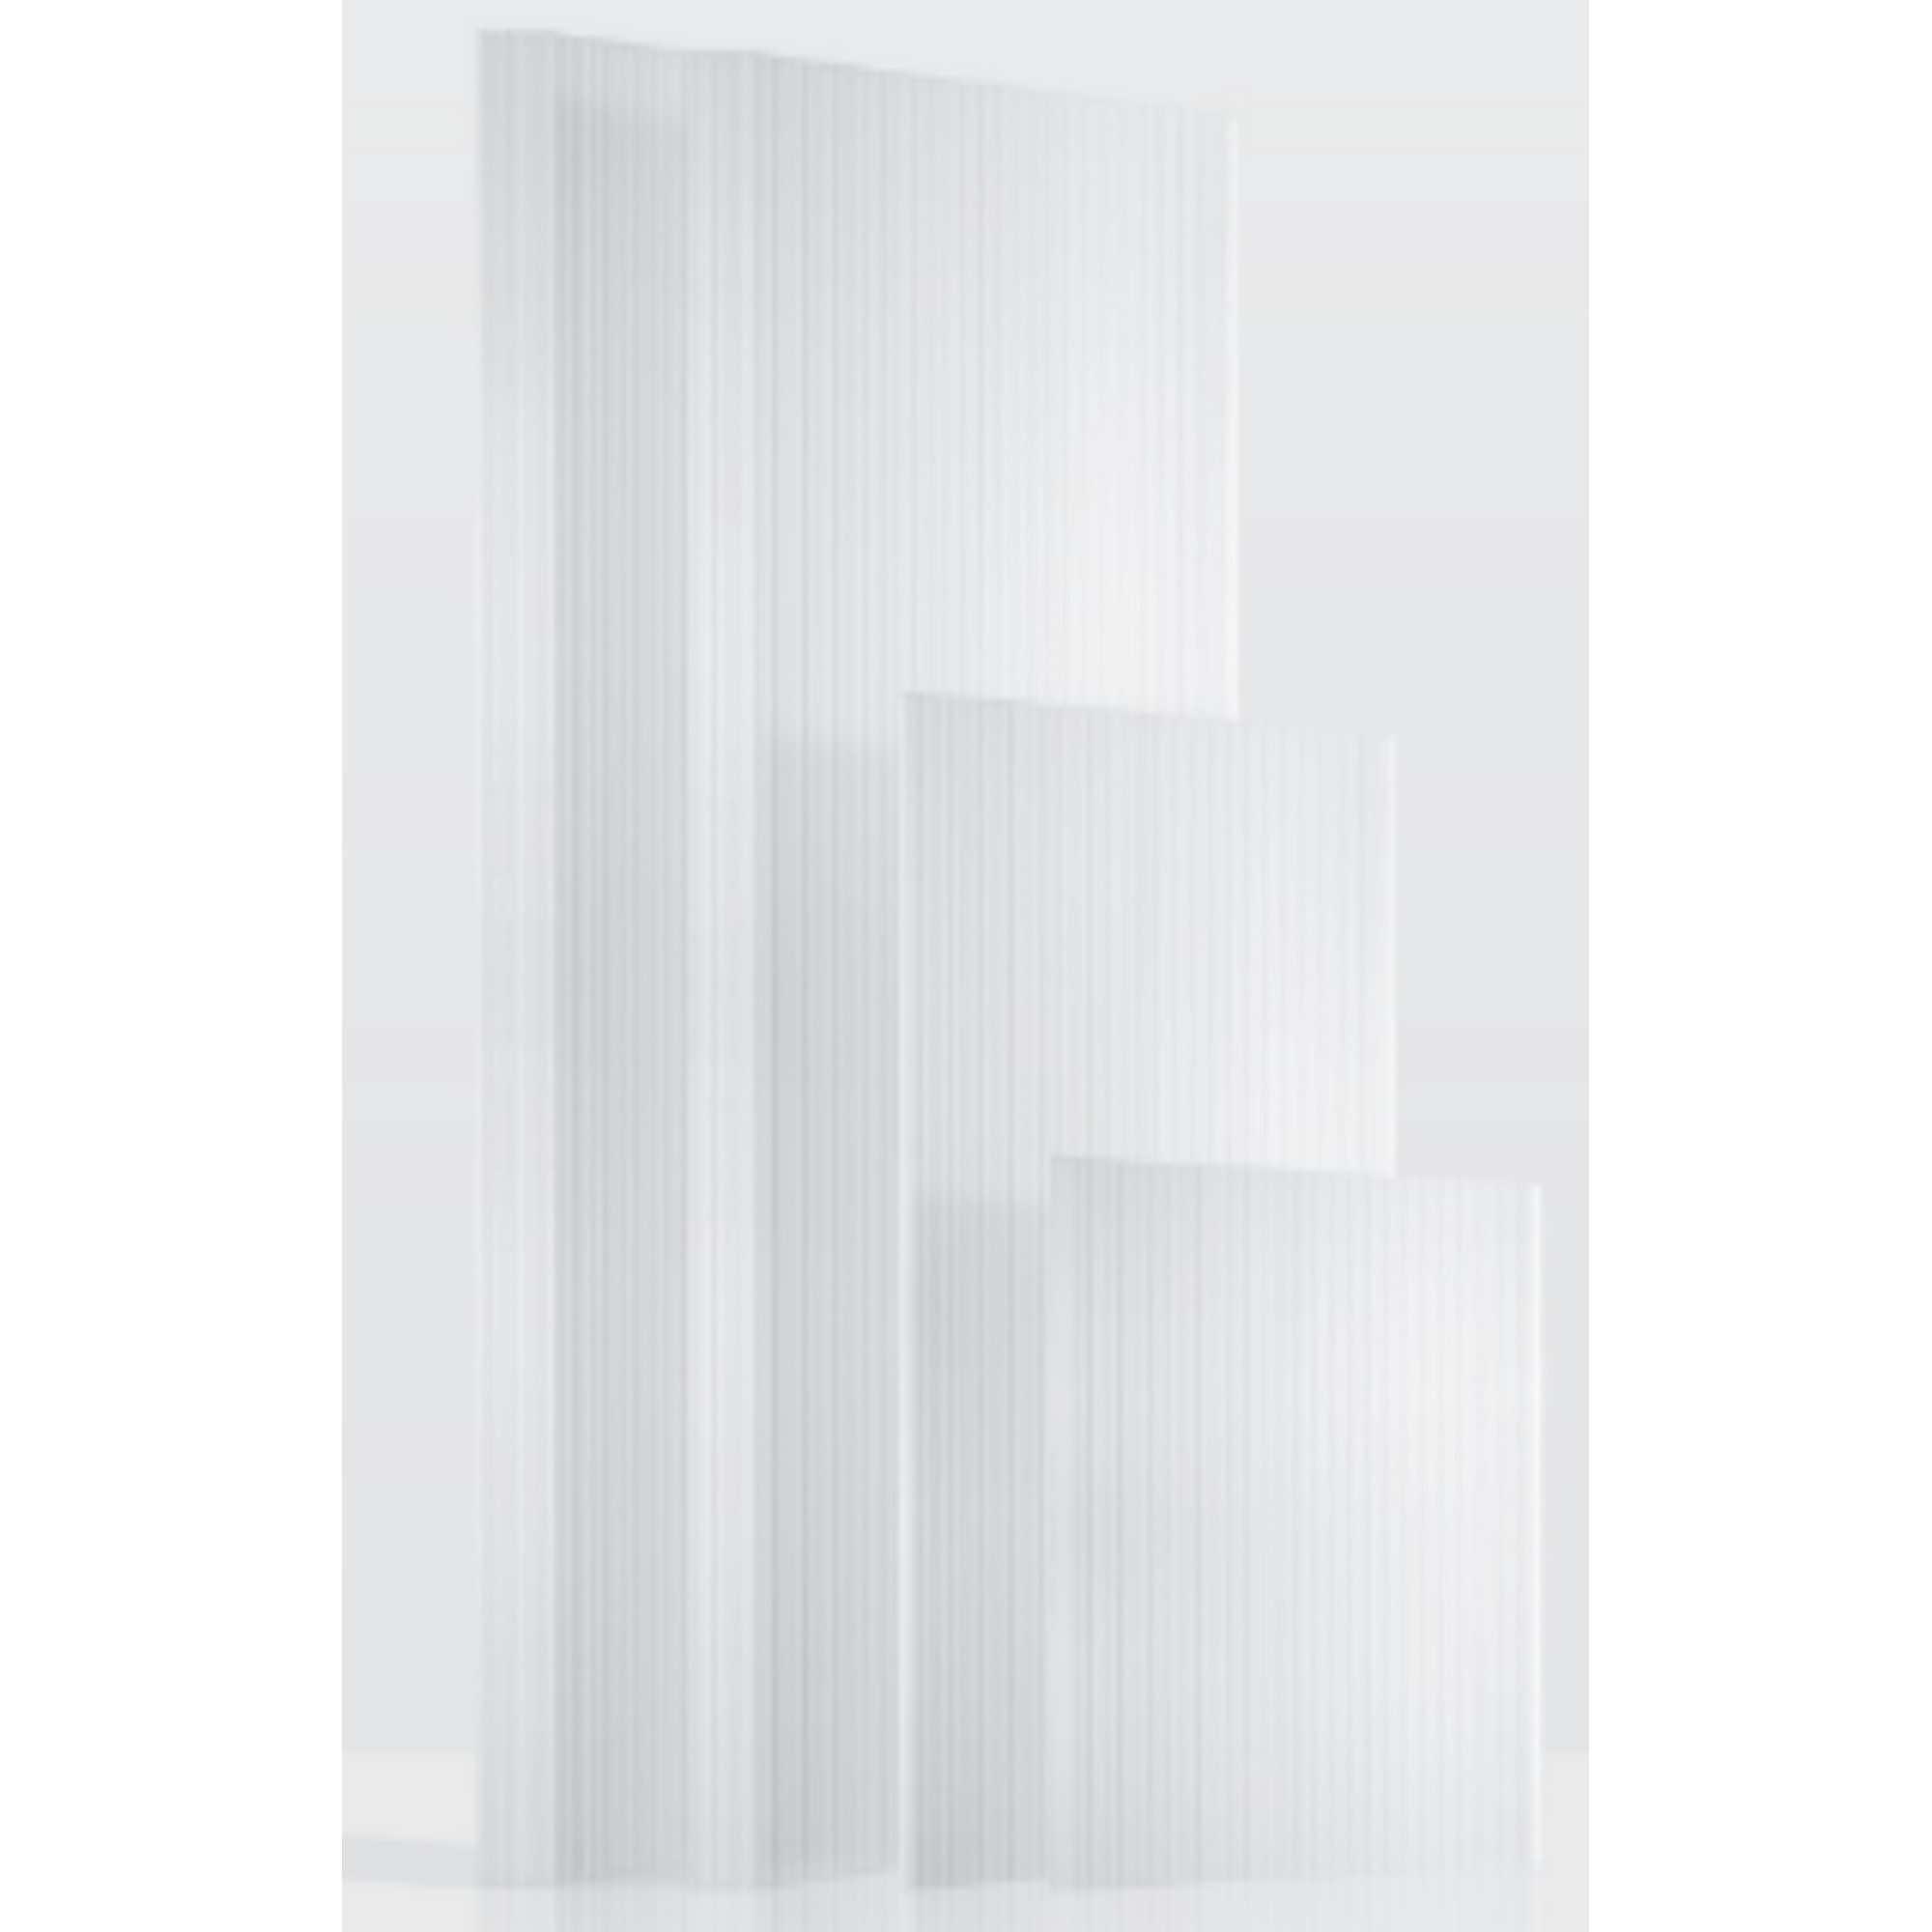 Hohlkammerplatten Gewächshaus 'Ergänzungsset 5' transparent 4 mm, 13-teilig + product picture